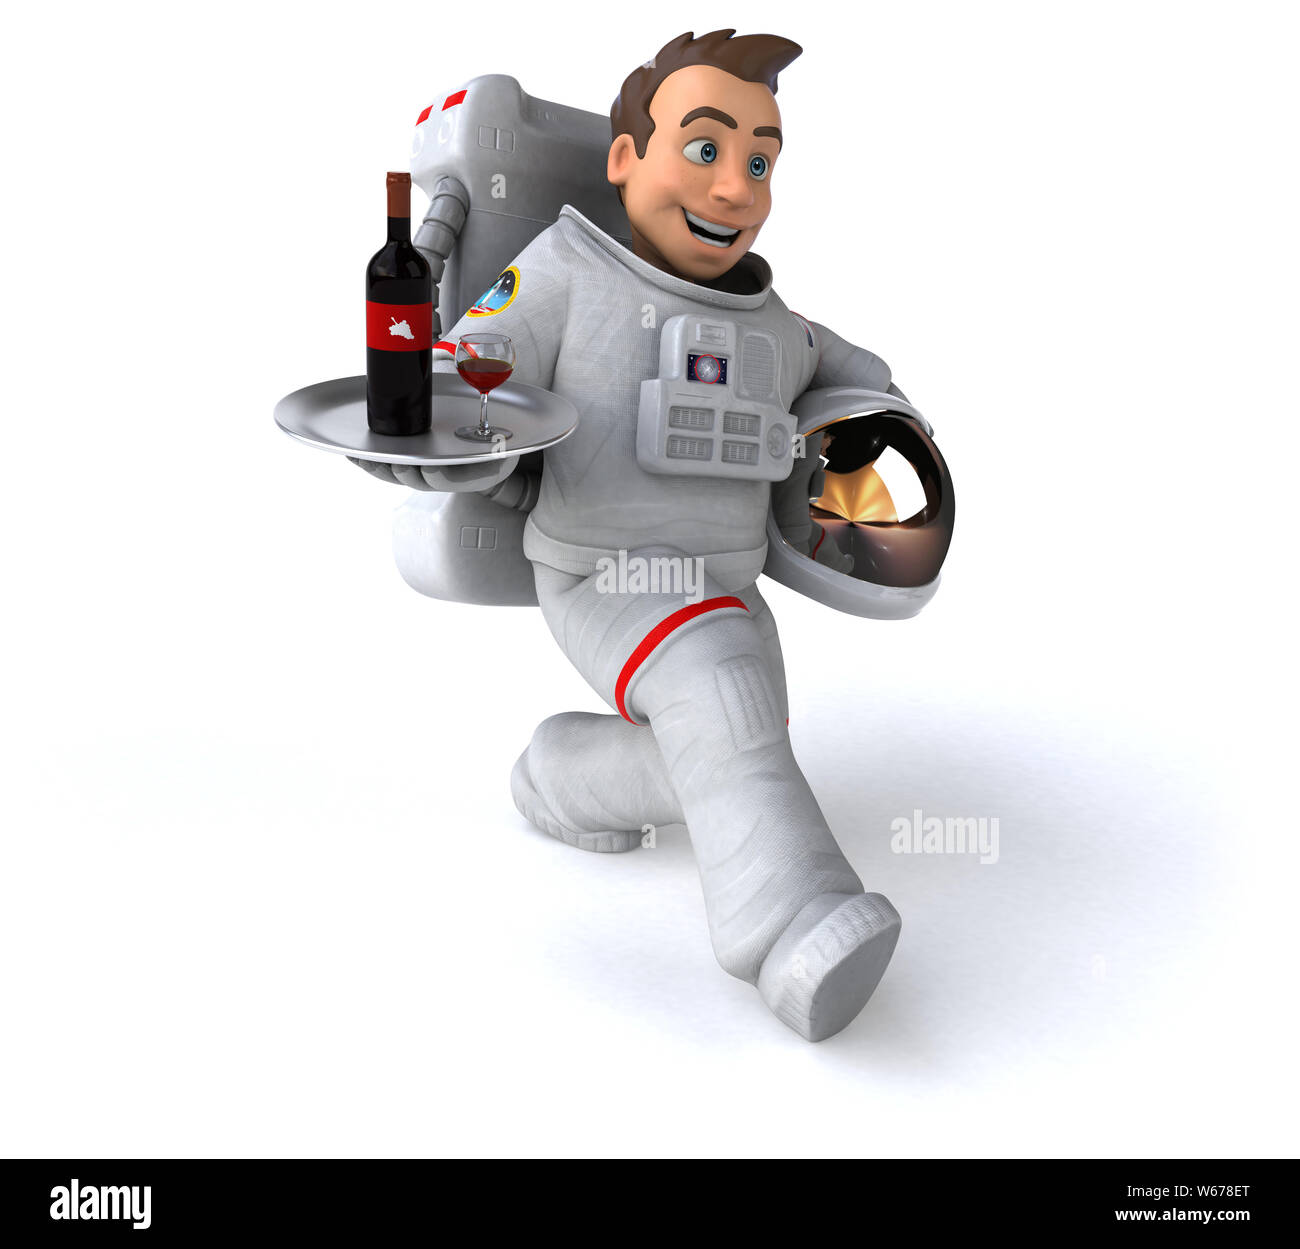 Fun astronaut - 3D Illustration Stock Photo